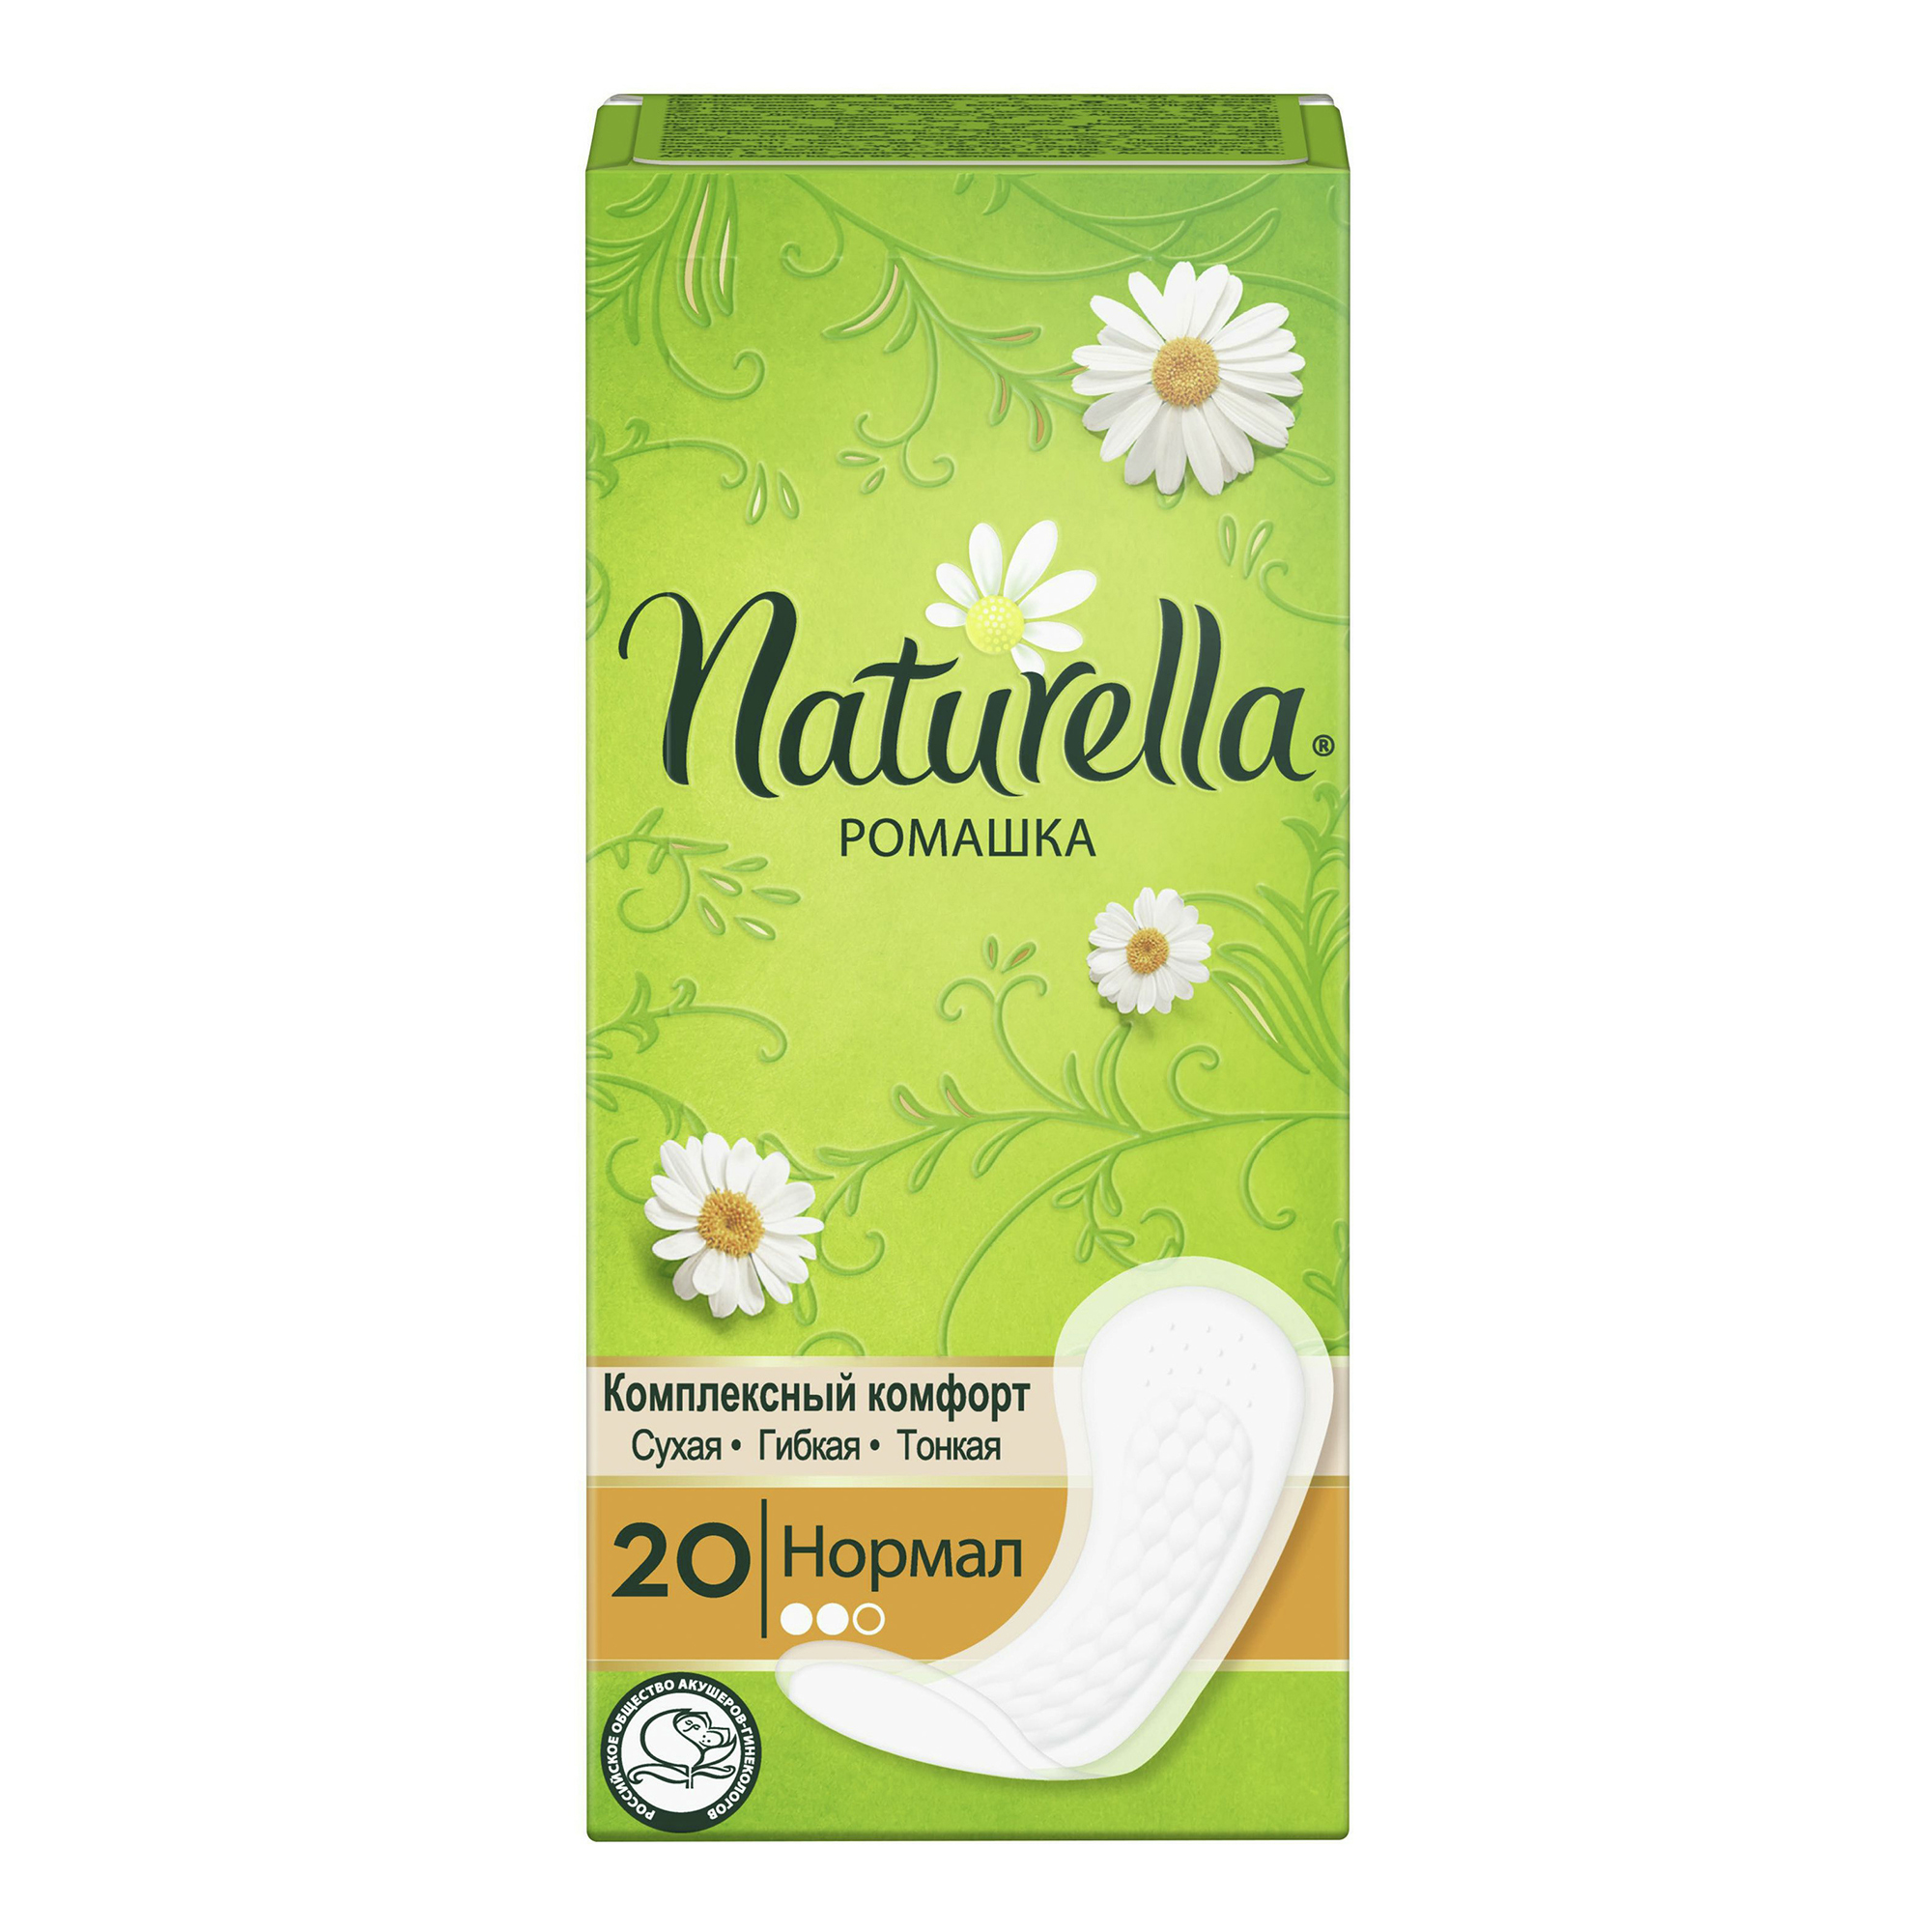 Прокладки ежедневные Naturella Normal с ароматом ромашки 20 шт. bella bella прокладки ежедневные супертонкие panty ideale normal